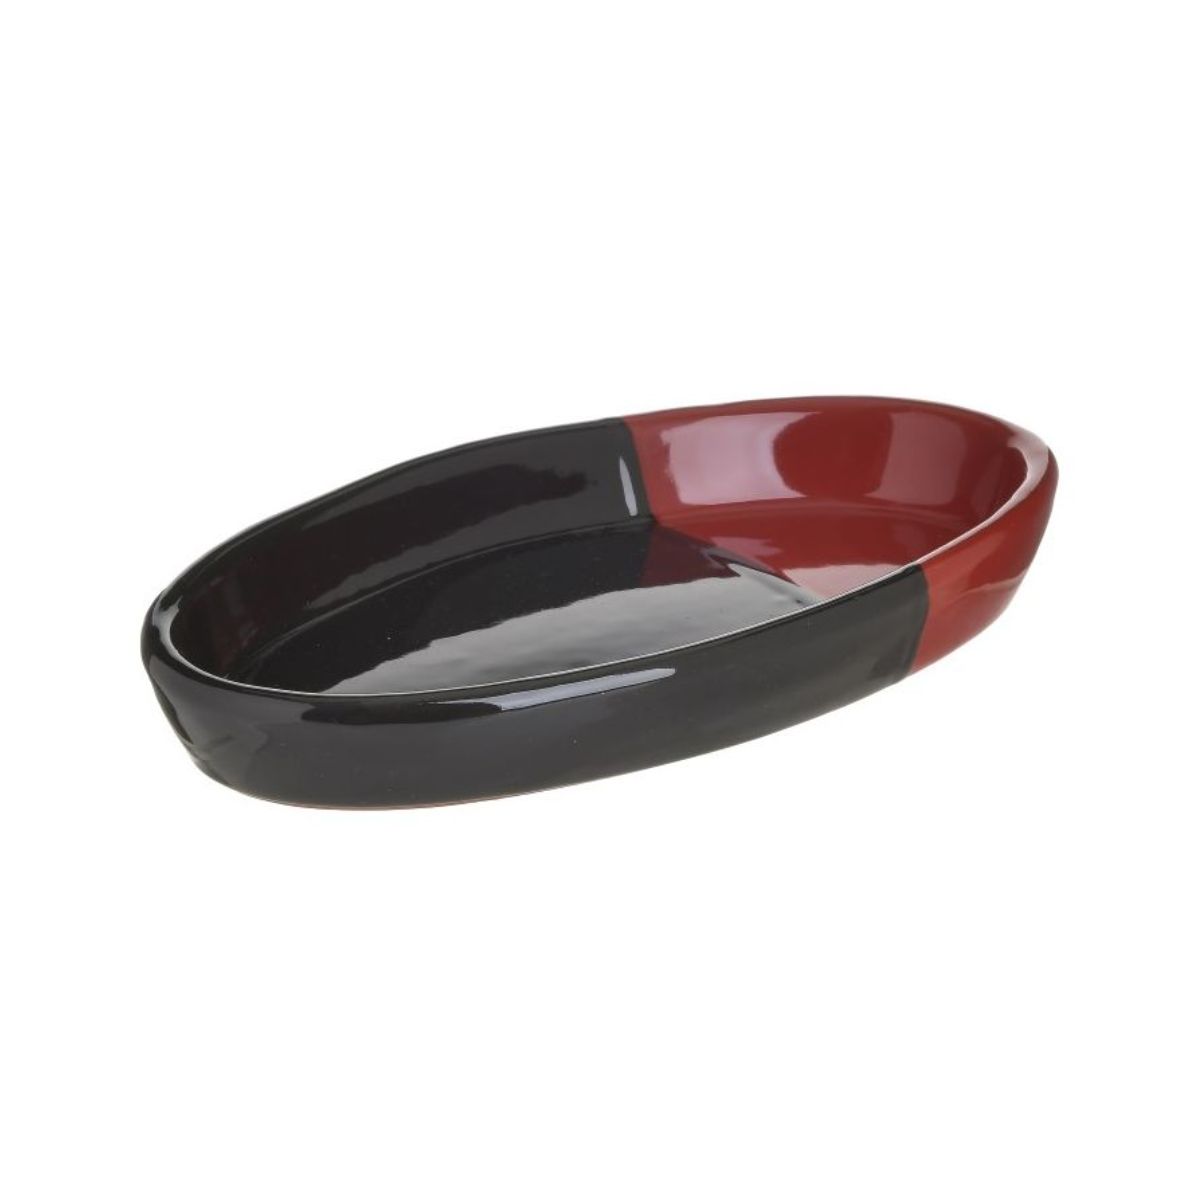 Bucatarie - Vas ceramic negru/rosu pentru cuptor 28X16 cm Inart, hectarul.ro